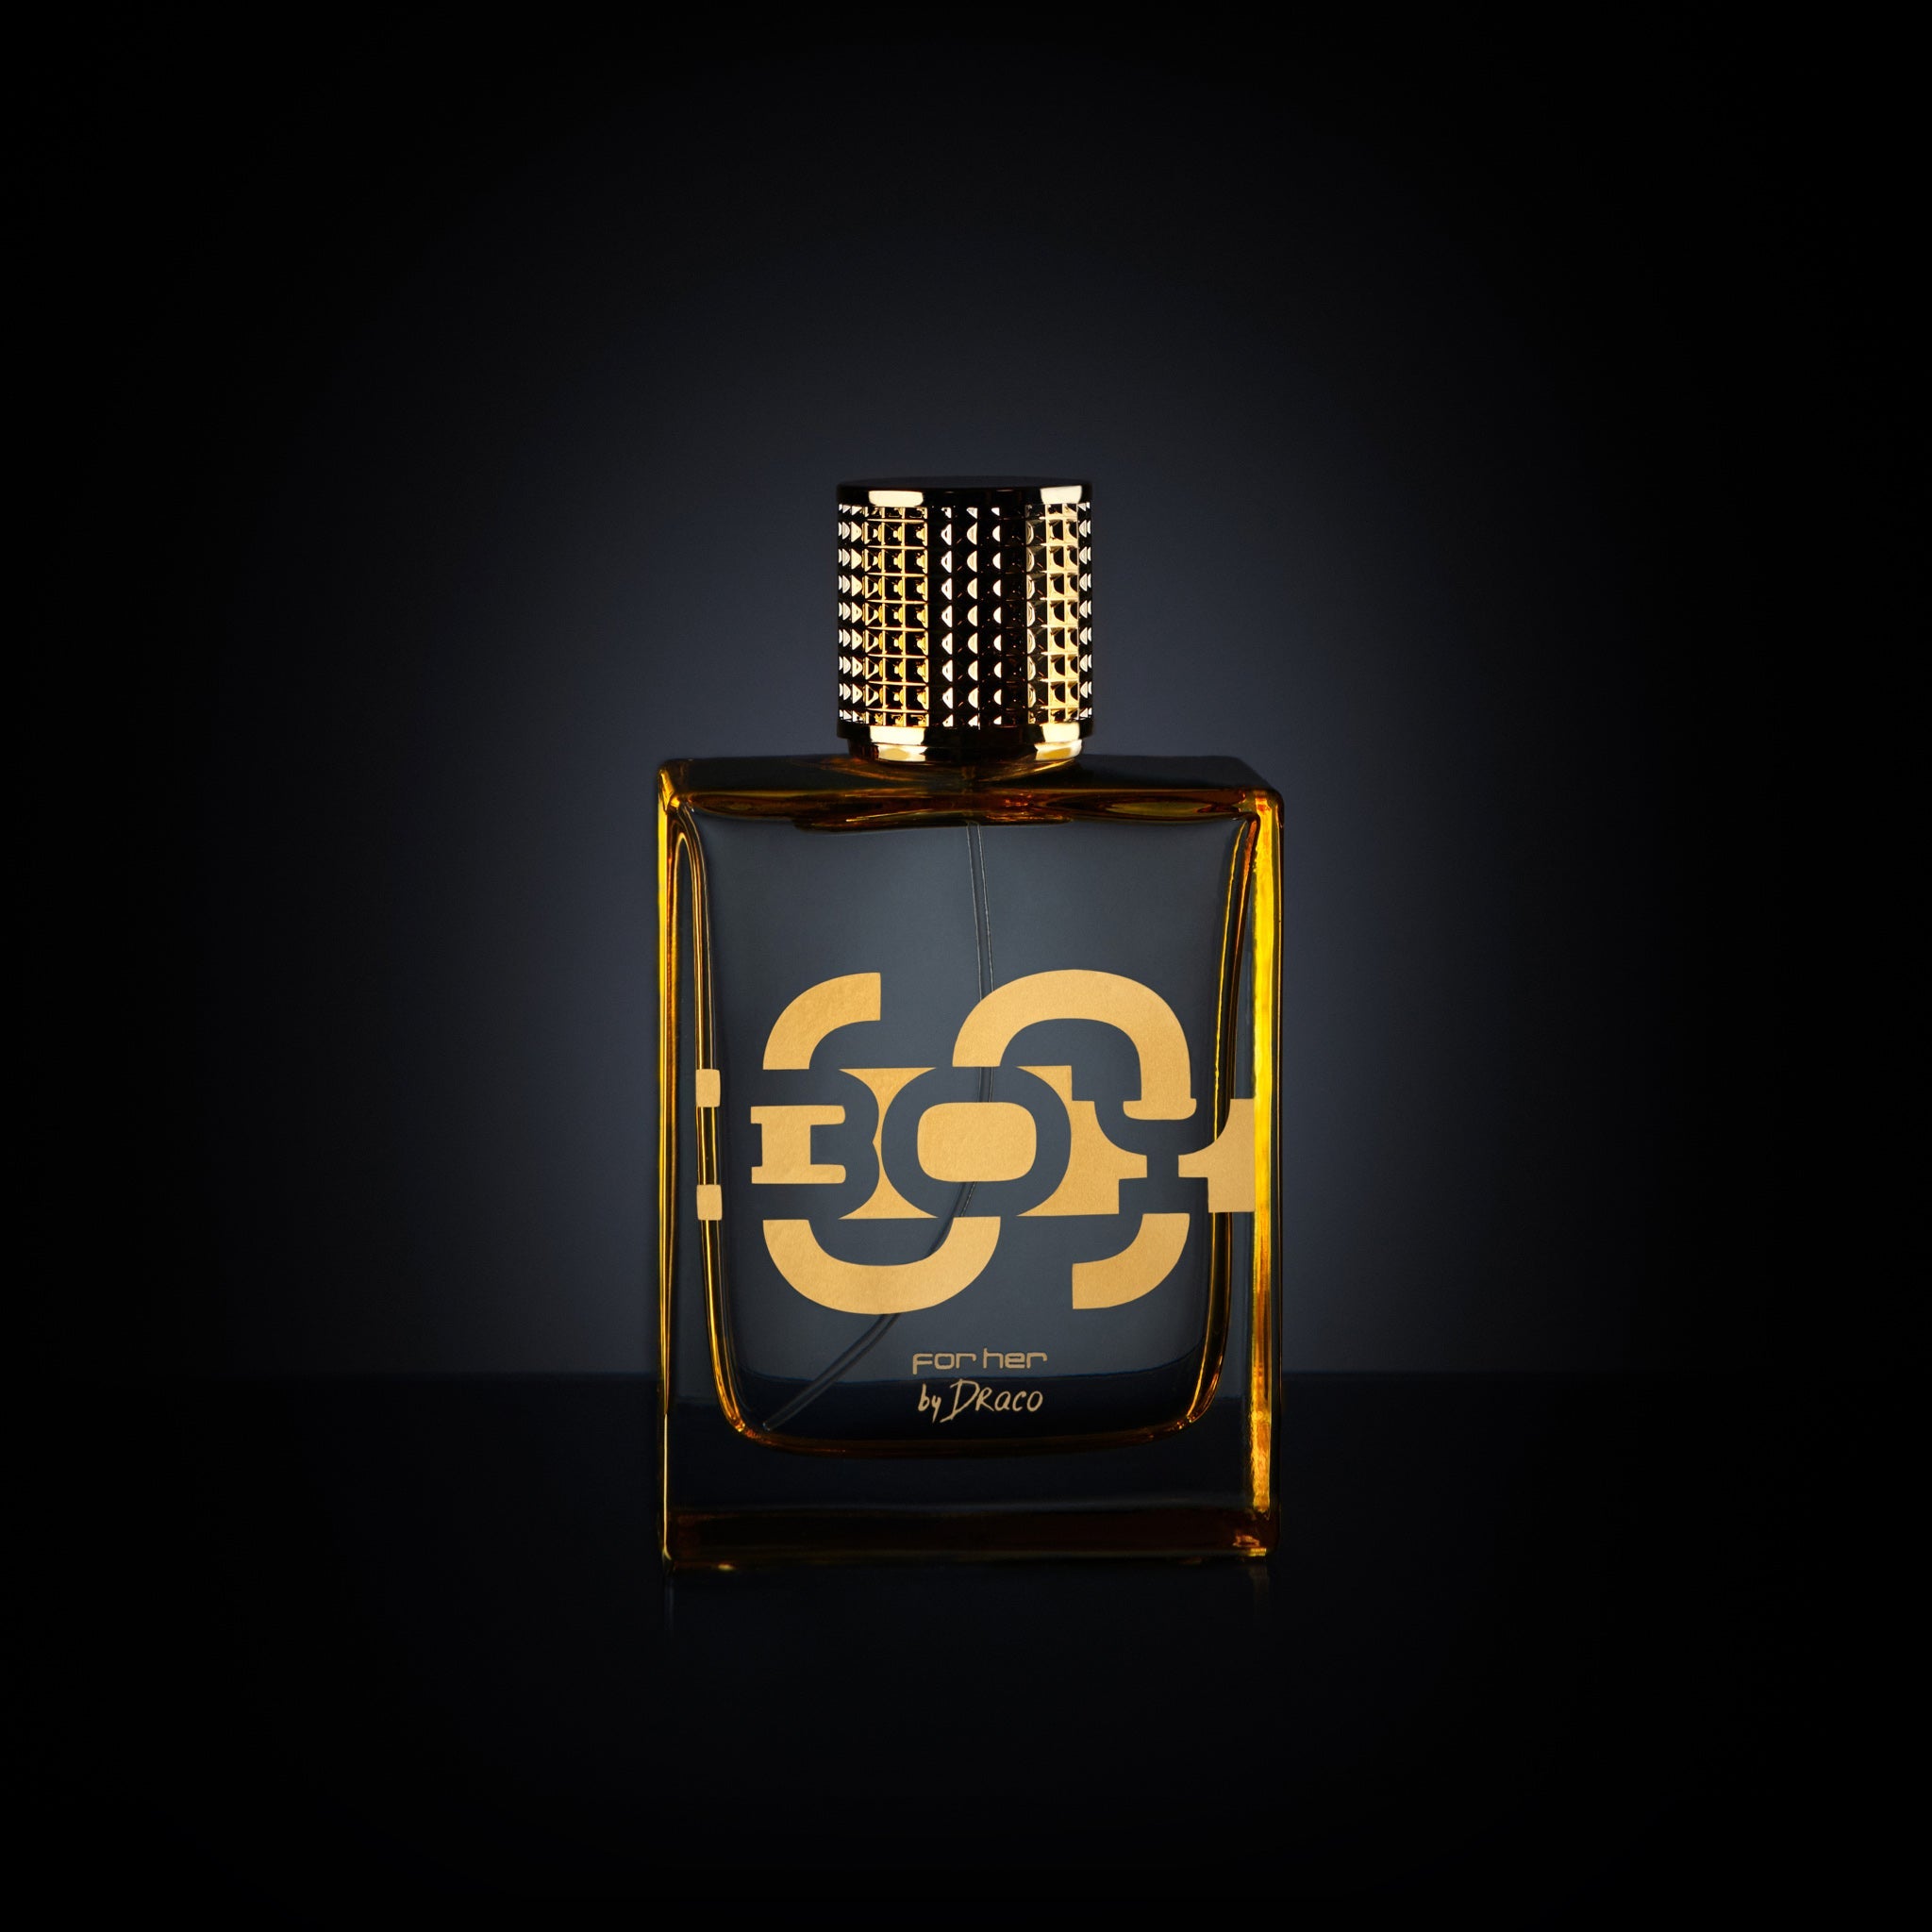 SBOY For Her eau de parfum. SBOY By Draco fragrance for women from Soulja Boy. Perfume bottle.